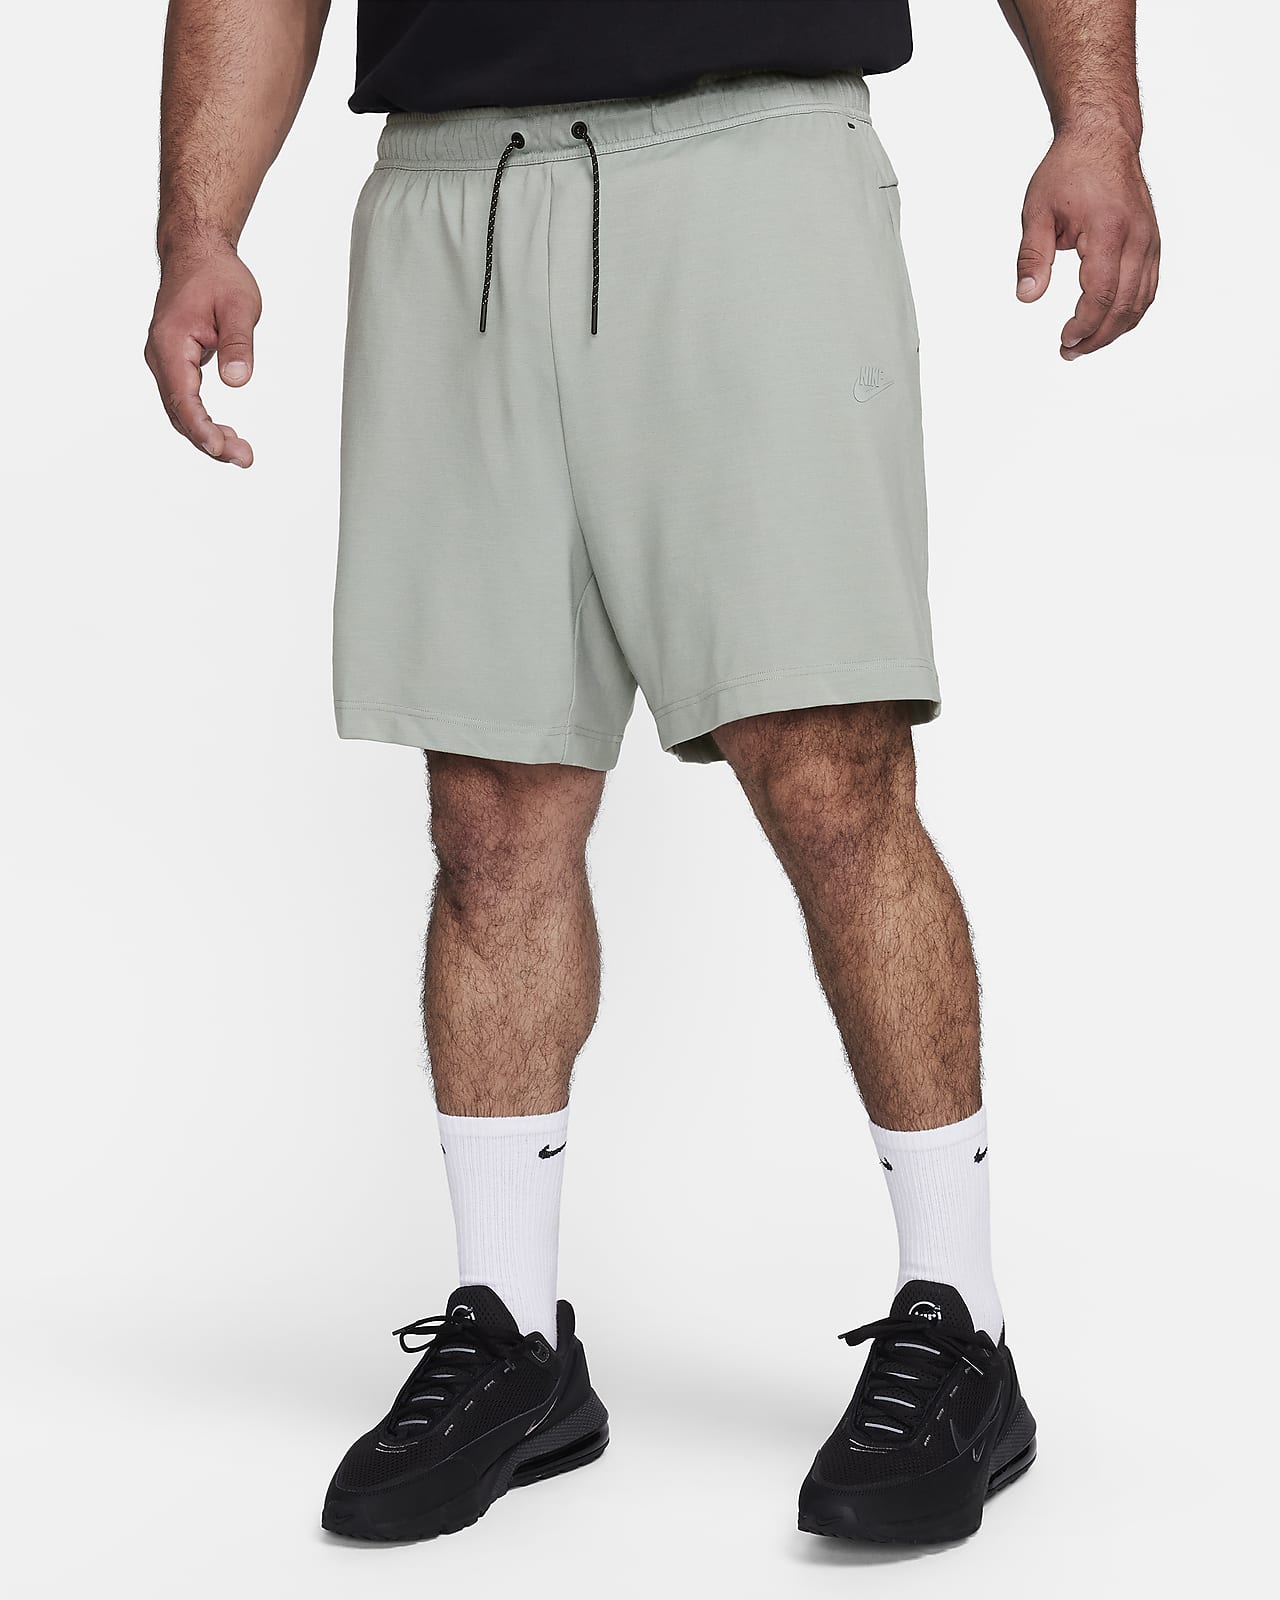 Mens Tech Fleece Shorts.